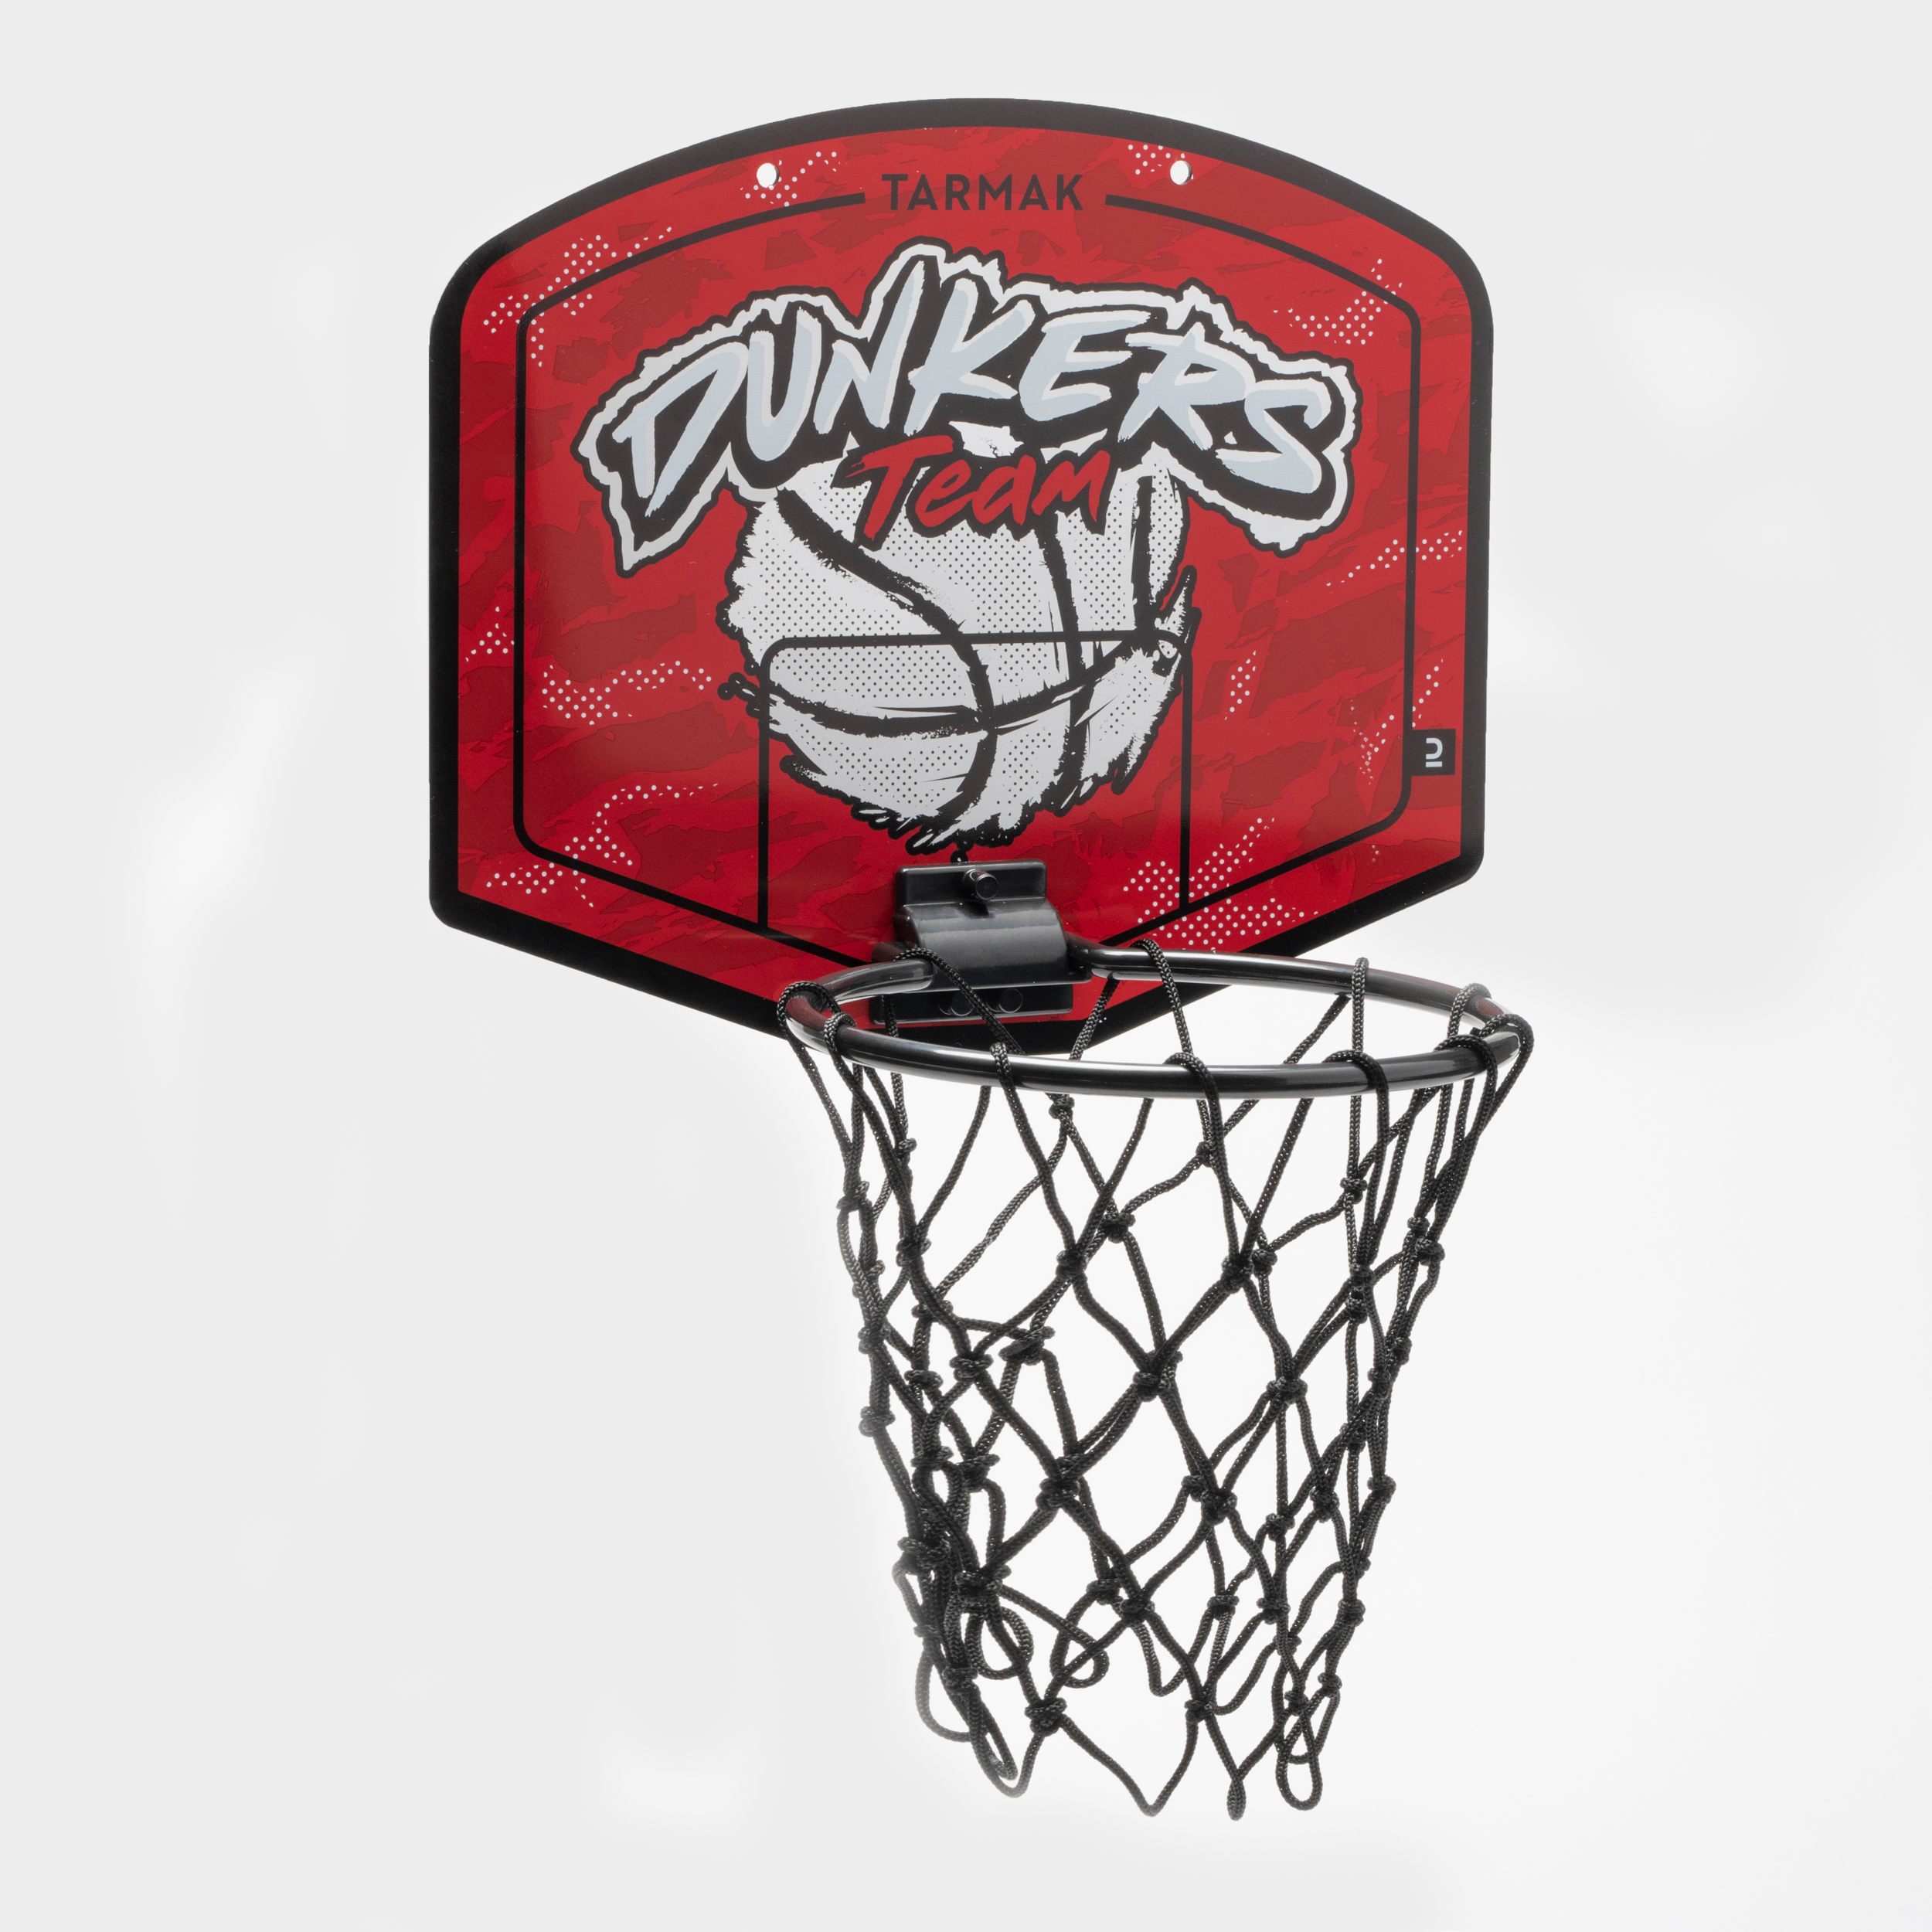 Mini Panier De Basket-ball, Ensemble De Jeux De Société Pour